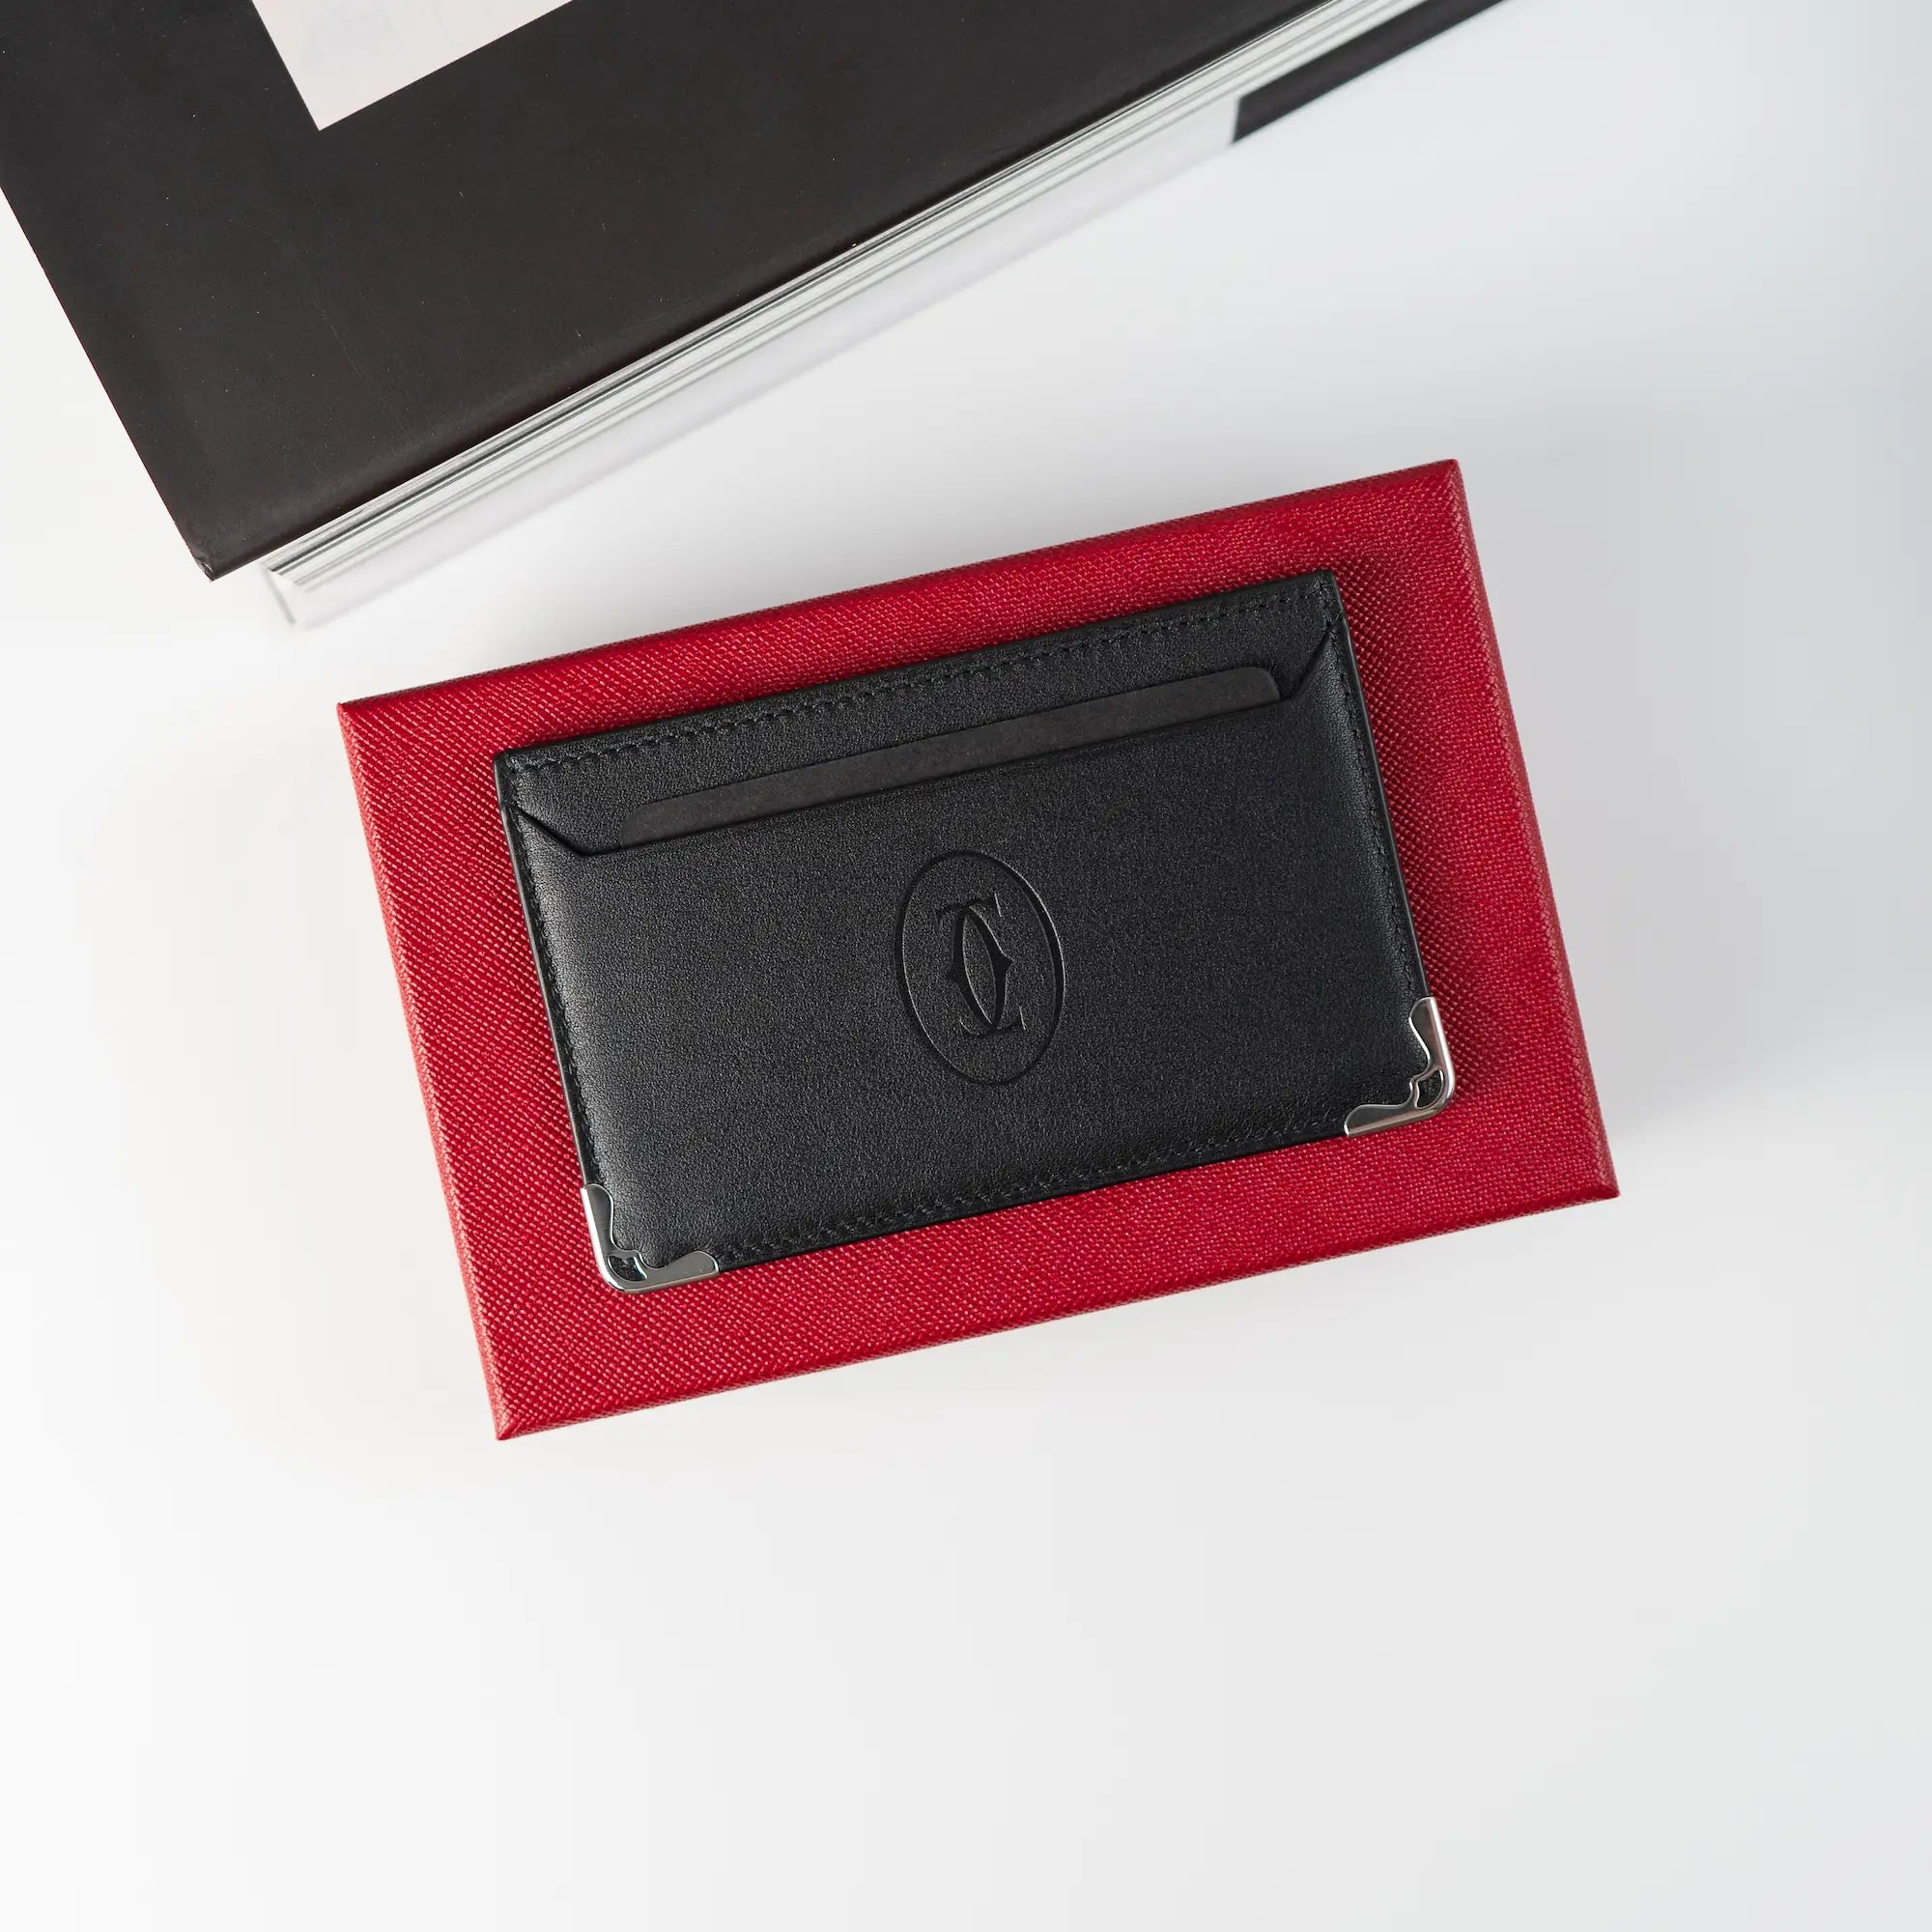 Produktfotografie des schwarzen Cardholders von Cartier aus schwarzem Leder, der auf der roten Umverpackung liegt